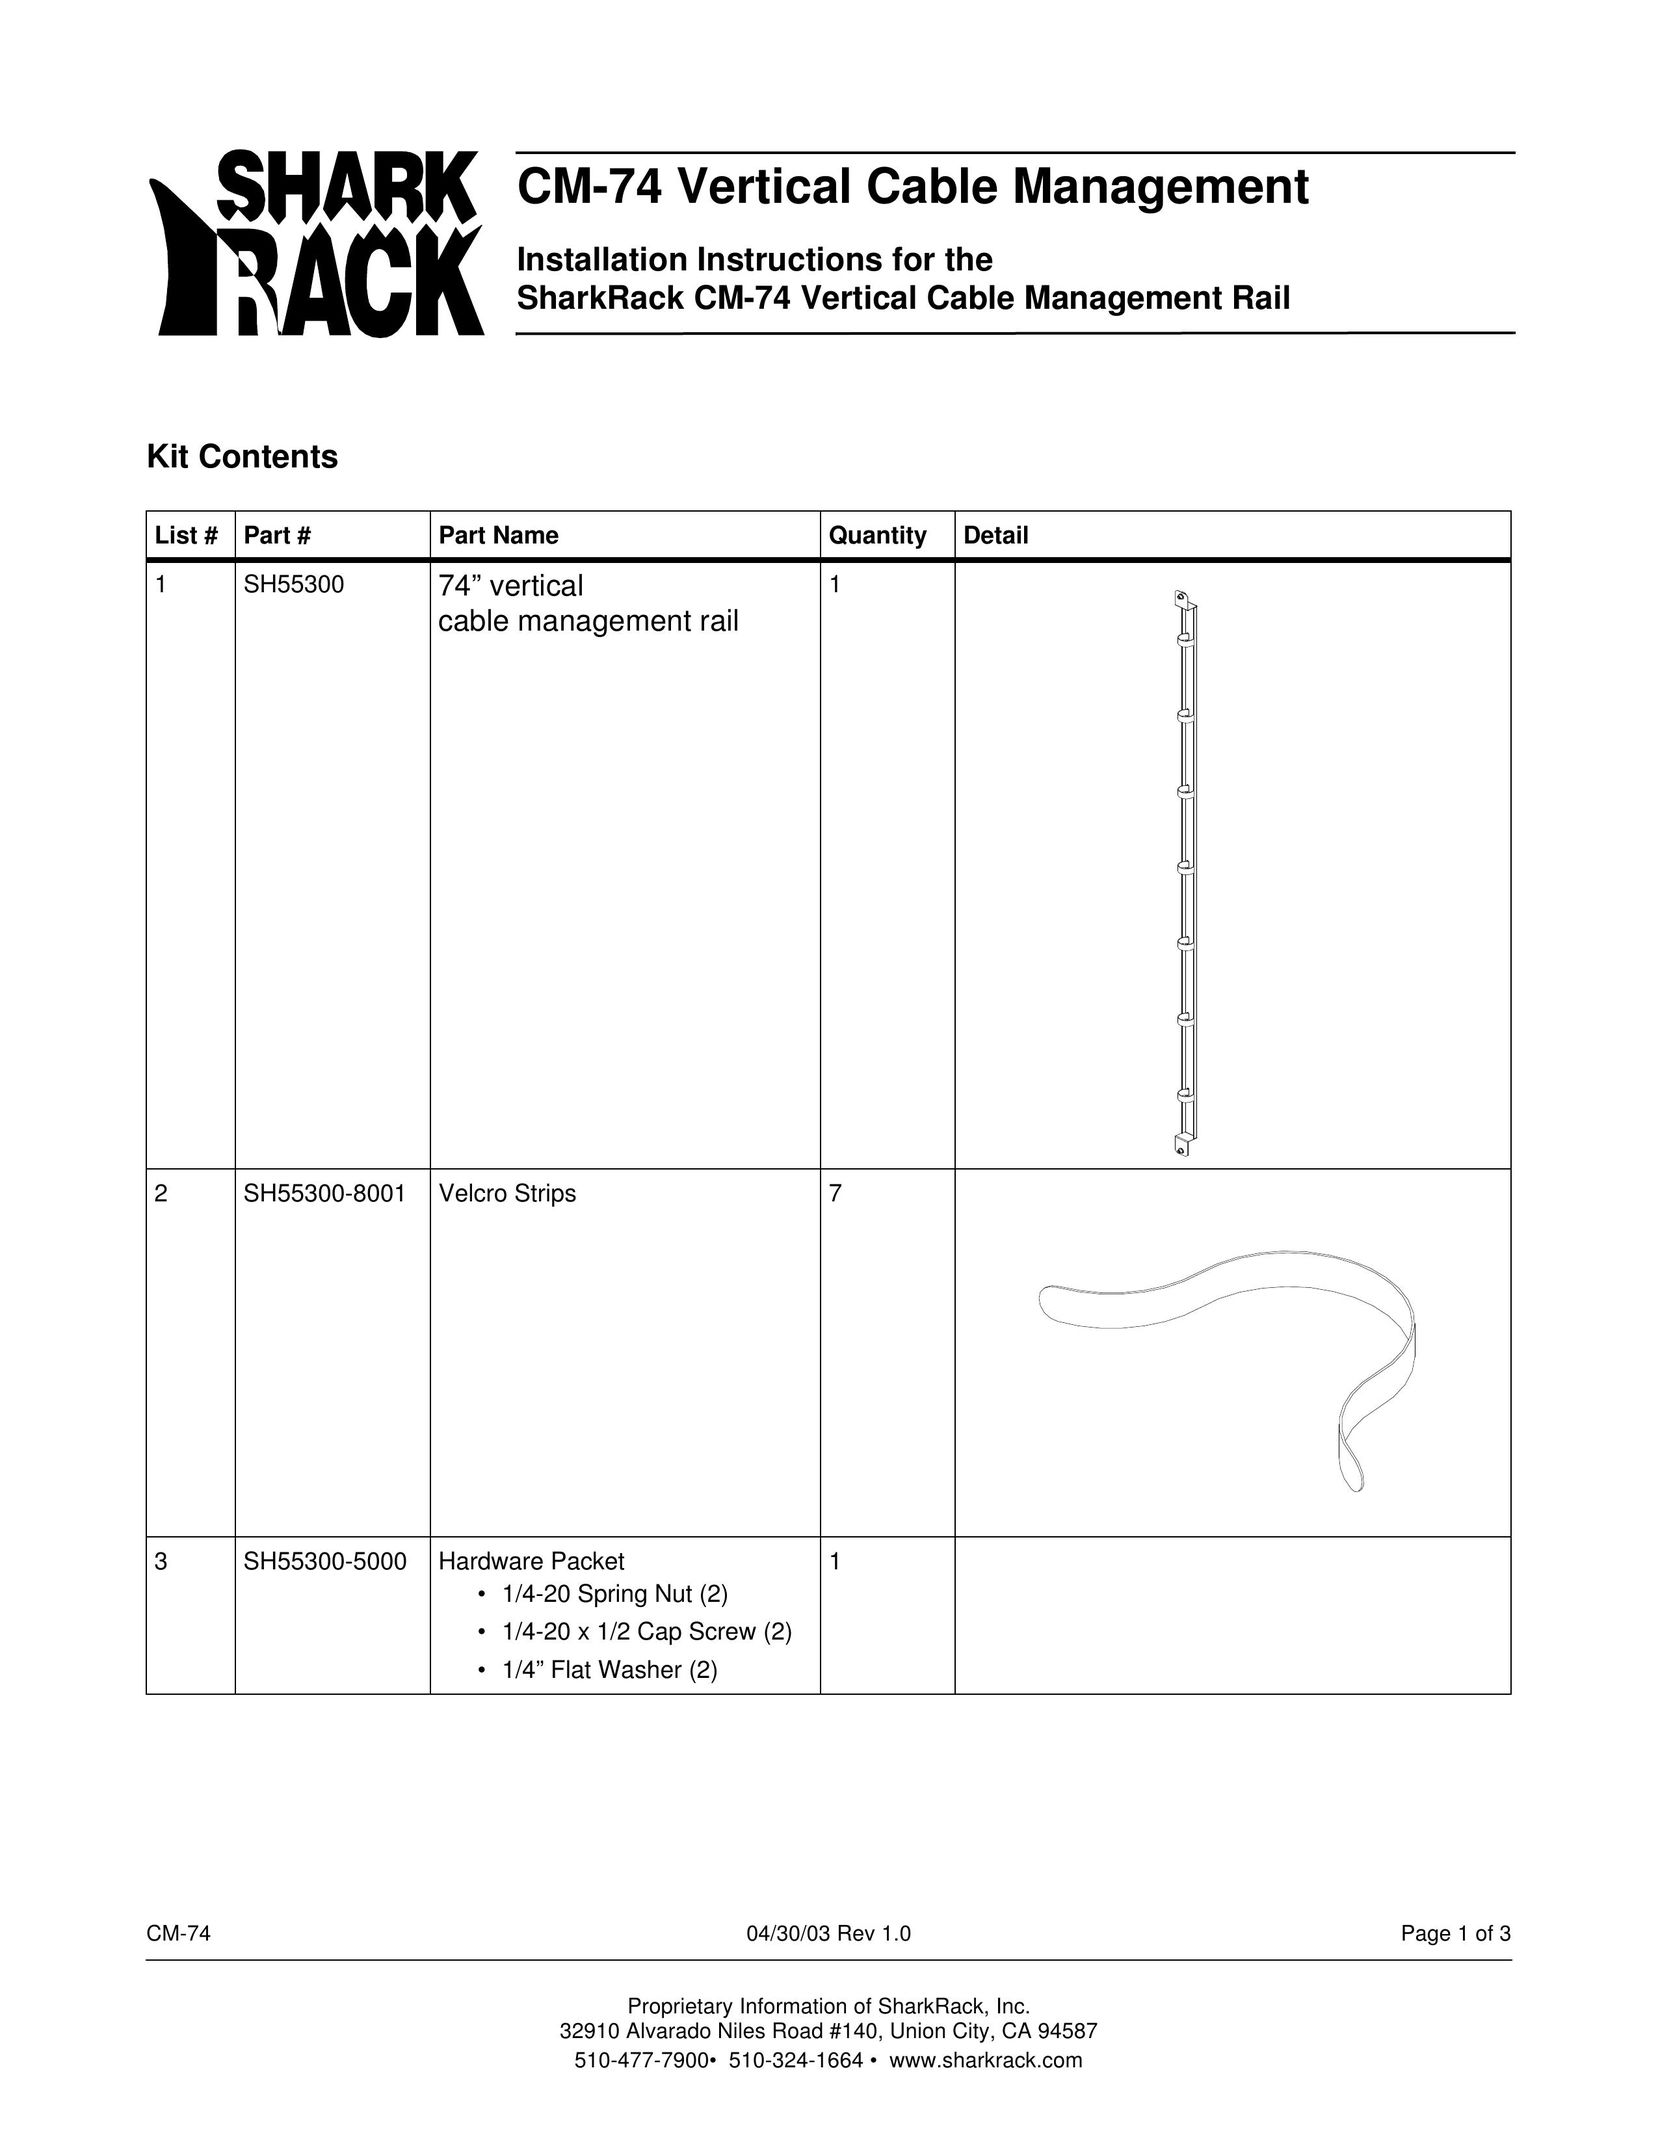 SharkRack CM-74 Carbon Monoxide Alarm User Manual